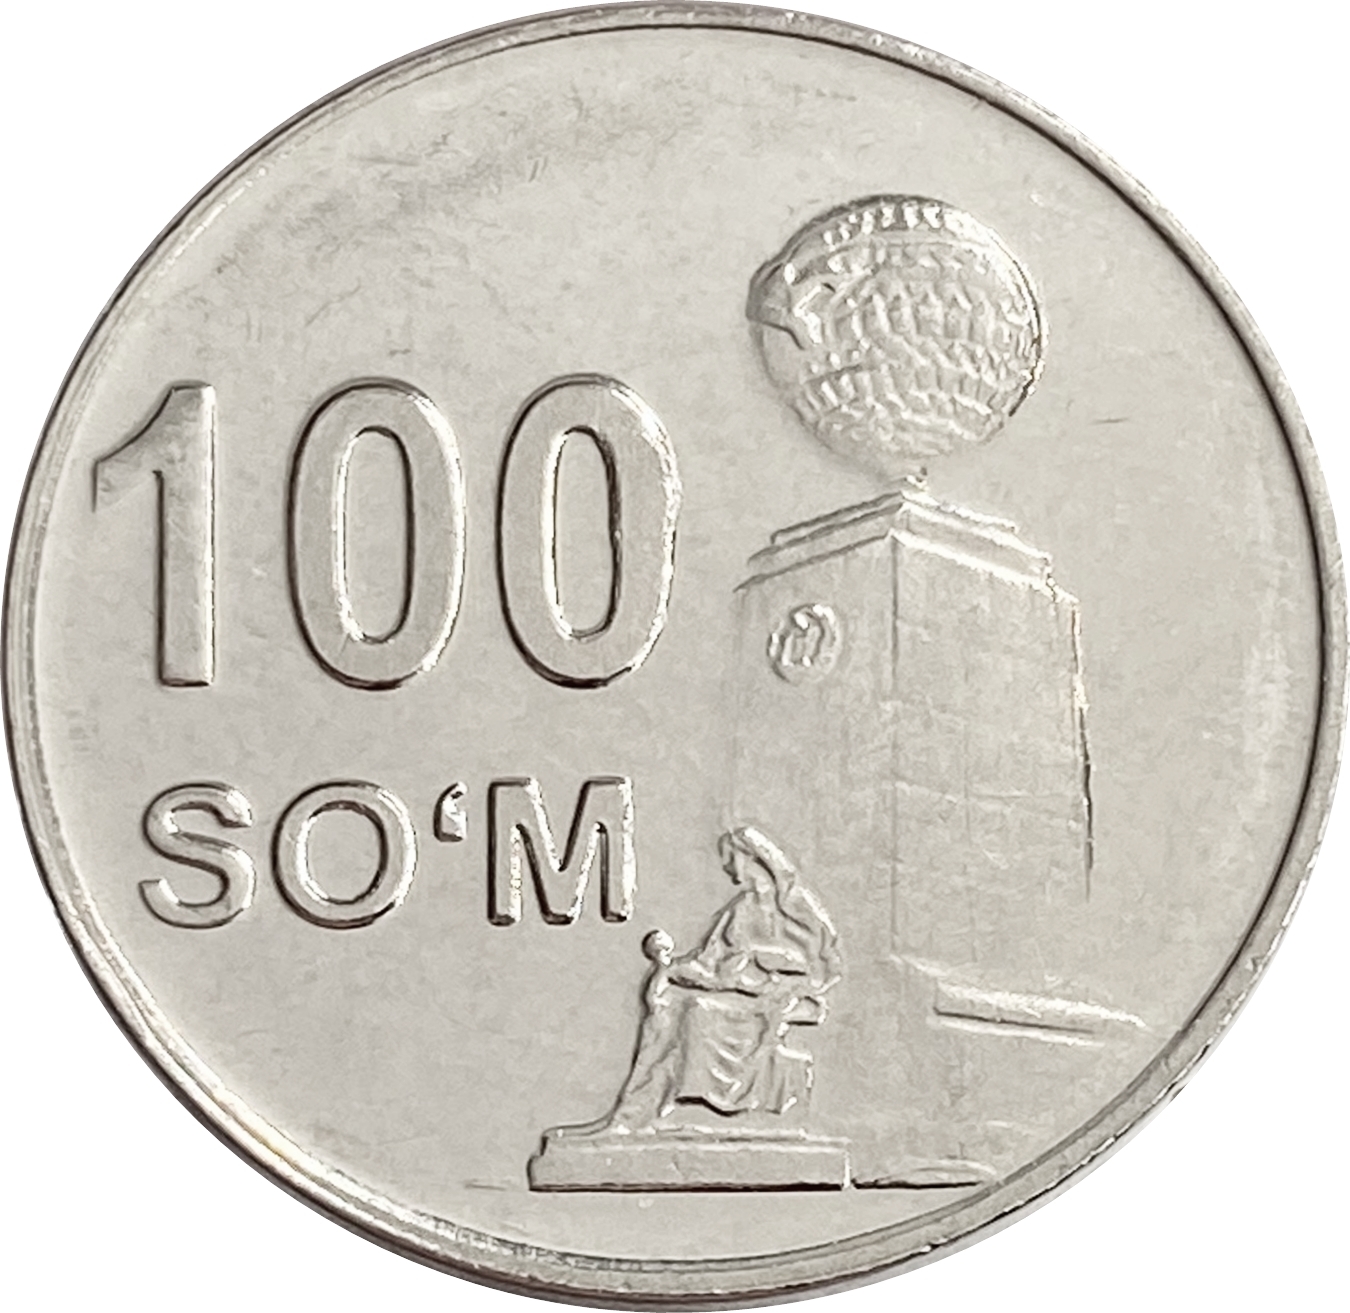 100000 узбекских. Монета 500 сумов Узбекистан 2018 год. Zbekiston Markaziy banki 2018 монета. 100 Сум. 100 Сум Узбекистан.